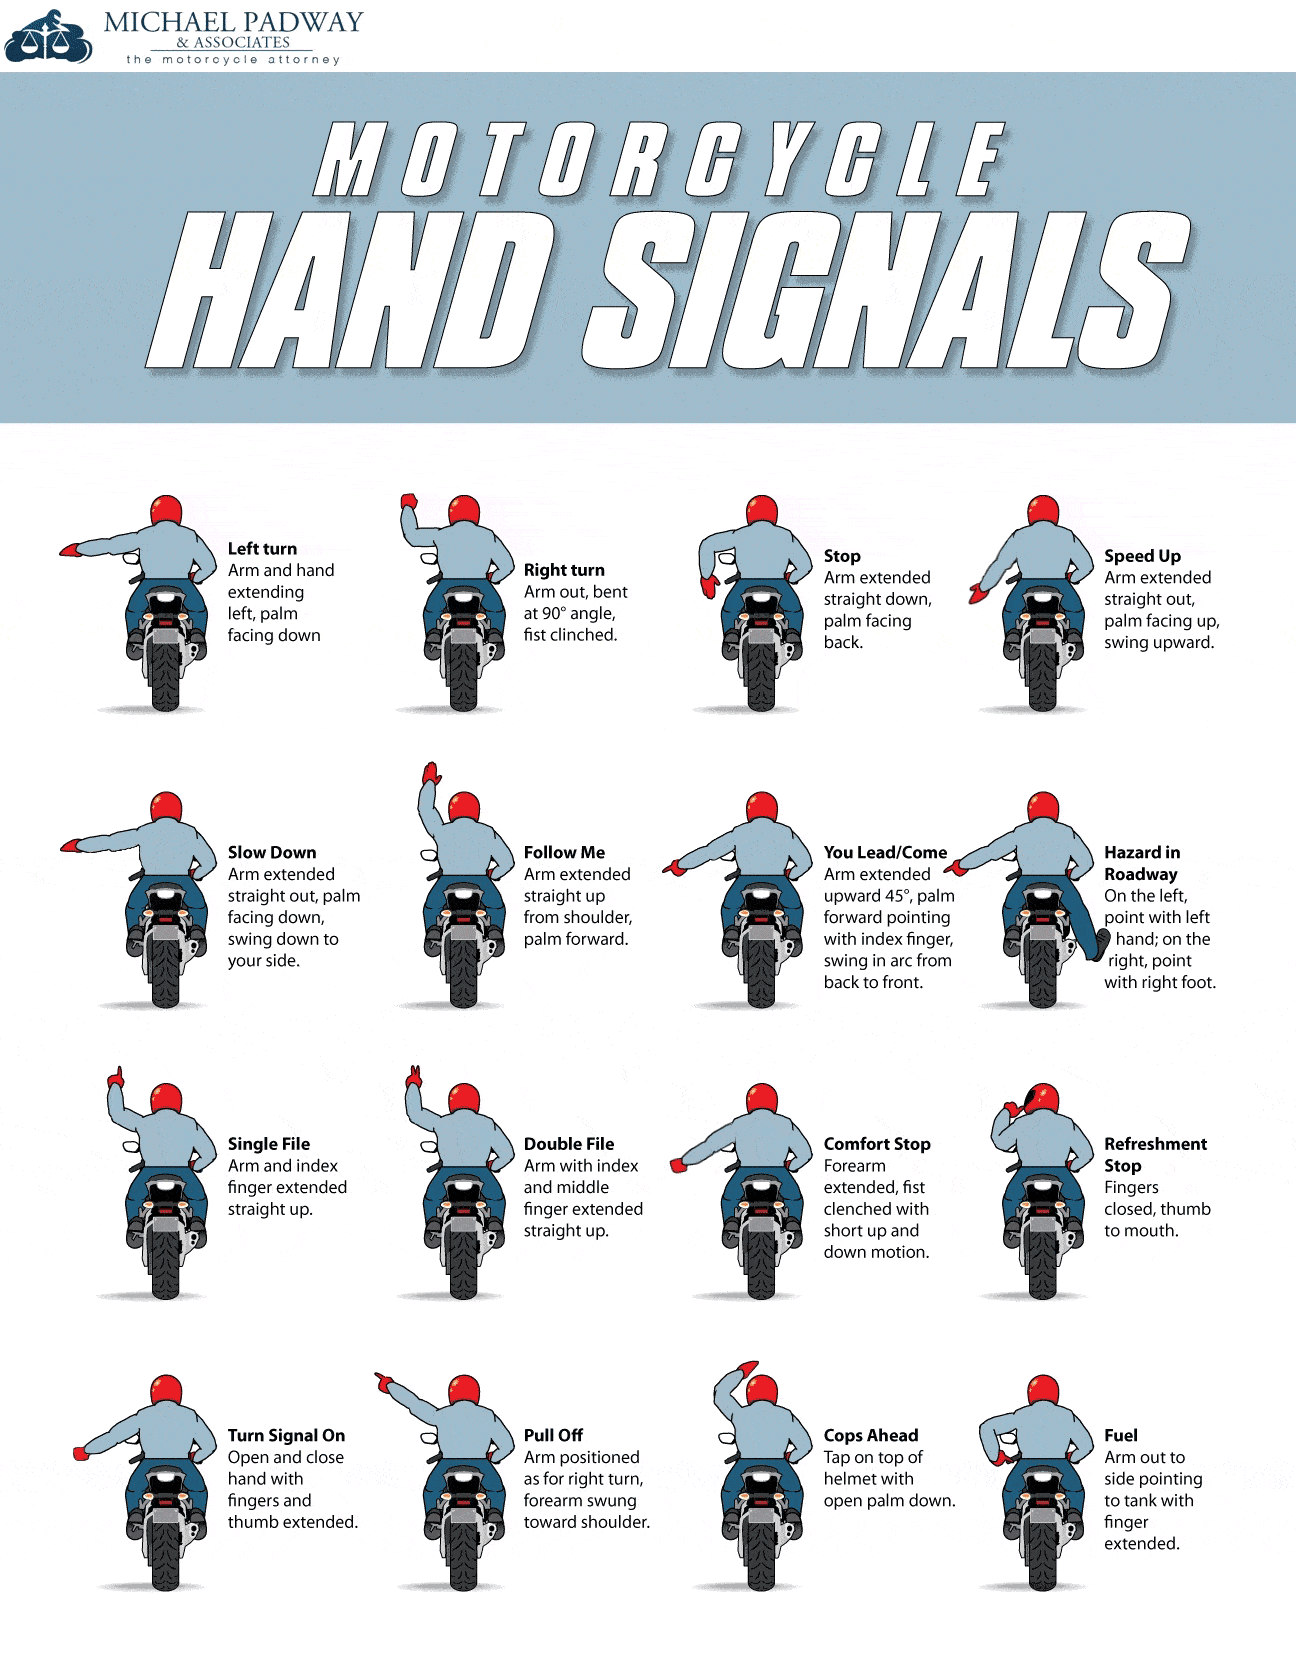 Пример 16 основных сигналов руками мотоциклиста, вид сзади.